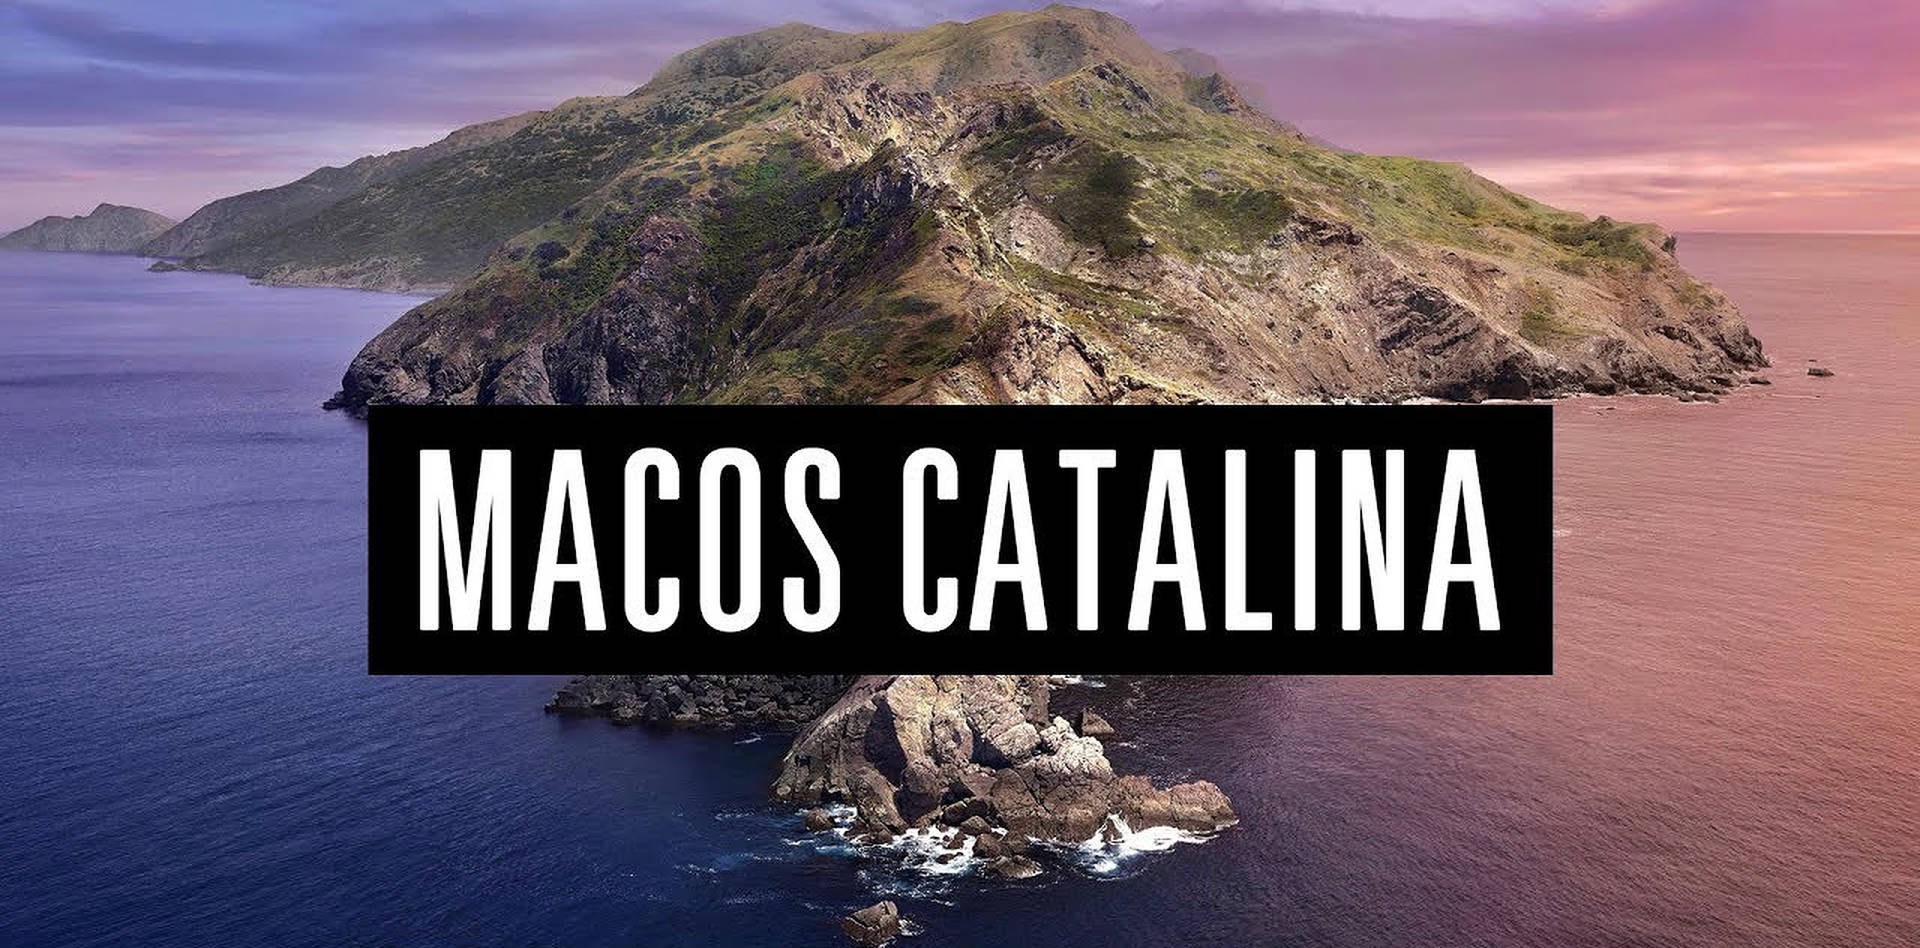 Captivating Landscape Of Macos Catalina Wallpaper